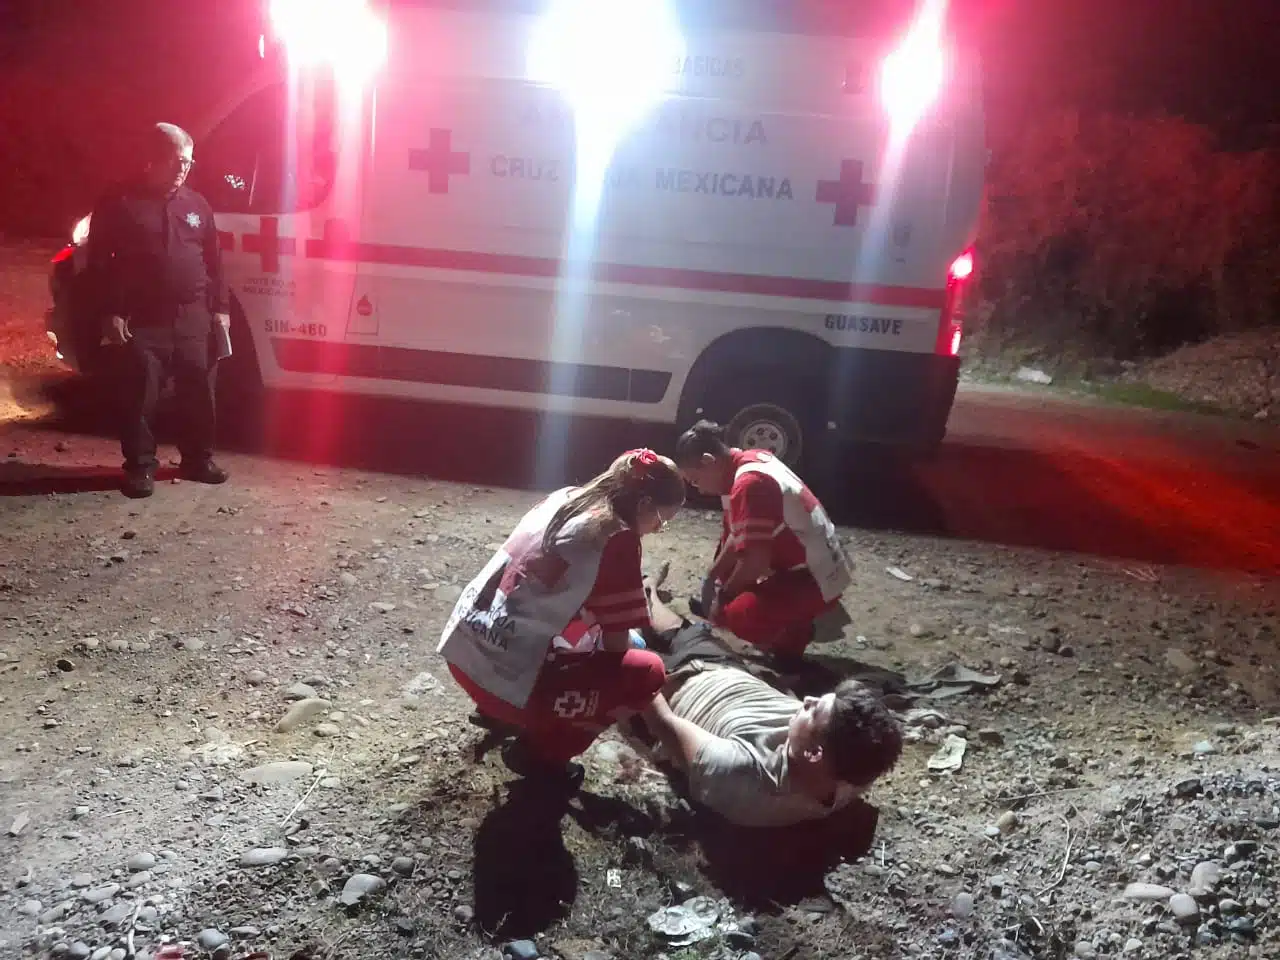 2 personas atendiendo a una en el suelo y una más mirando a un lado de una ambulancia con las luces prendidas